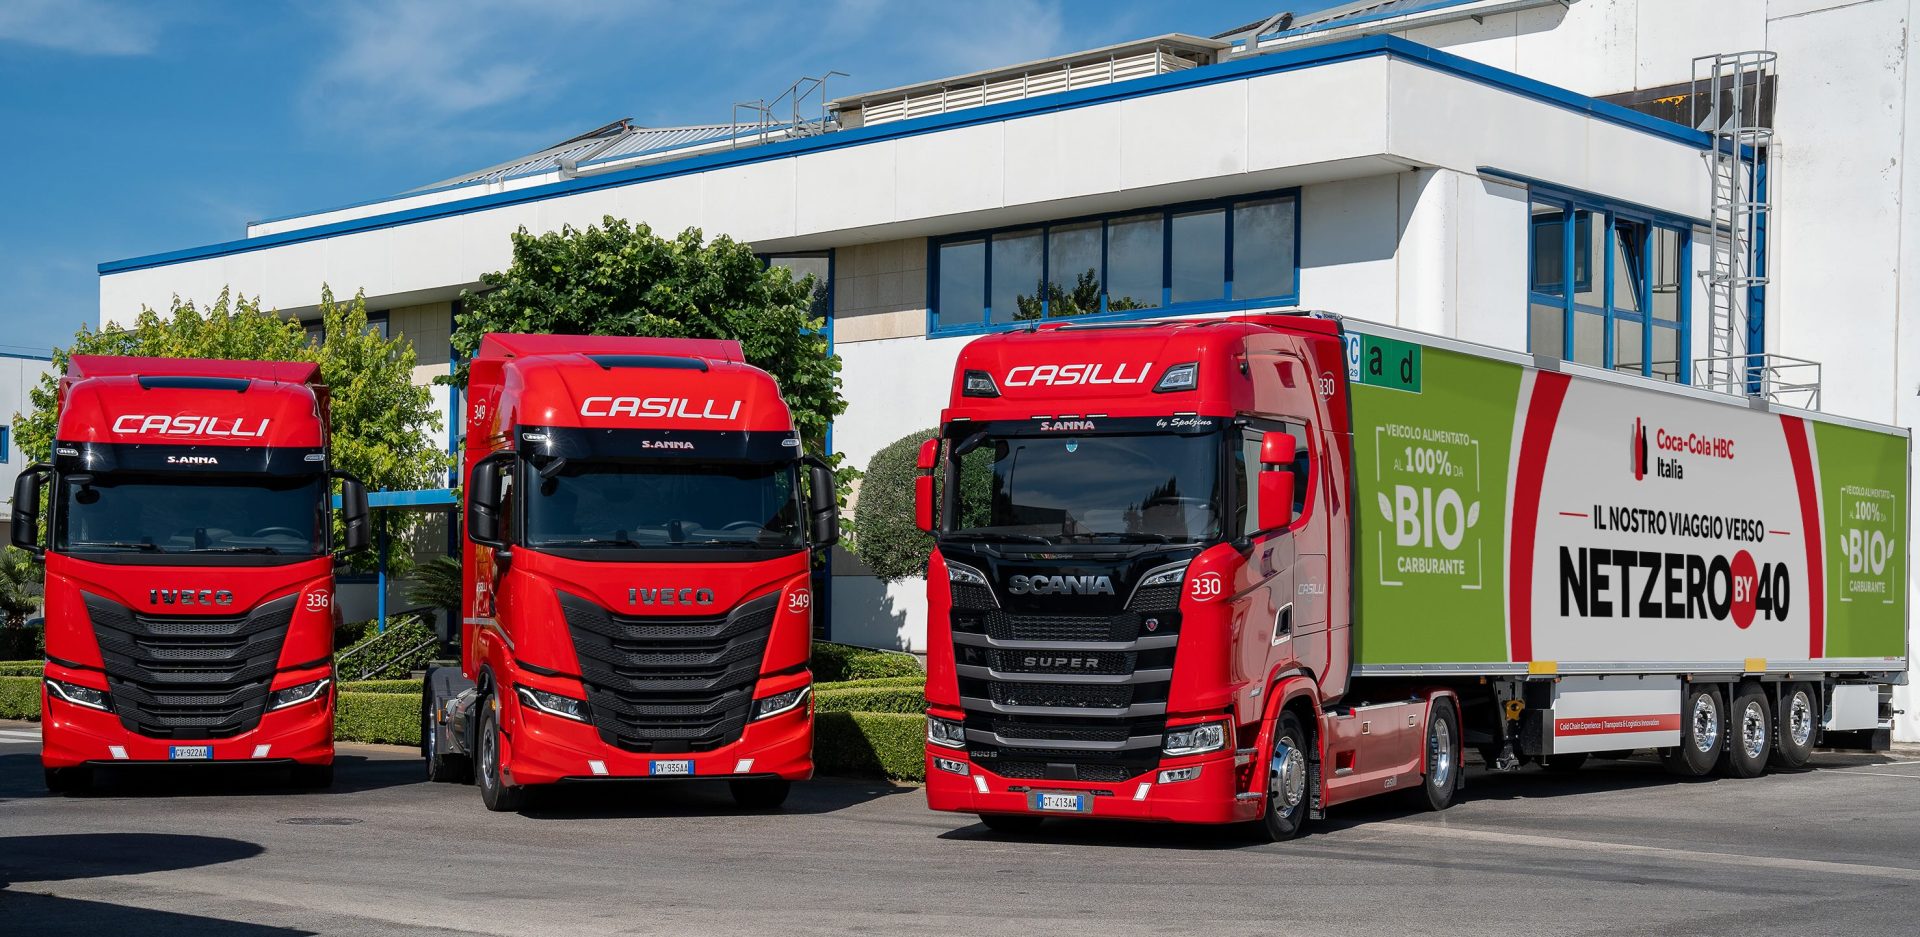 Coca-Cola HBC Italia e Casilli Enterprise partnership per veicoli a biocarburante